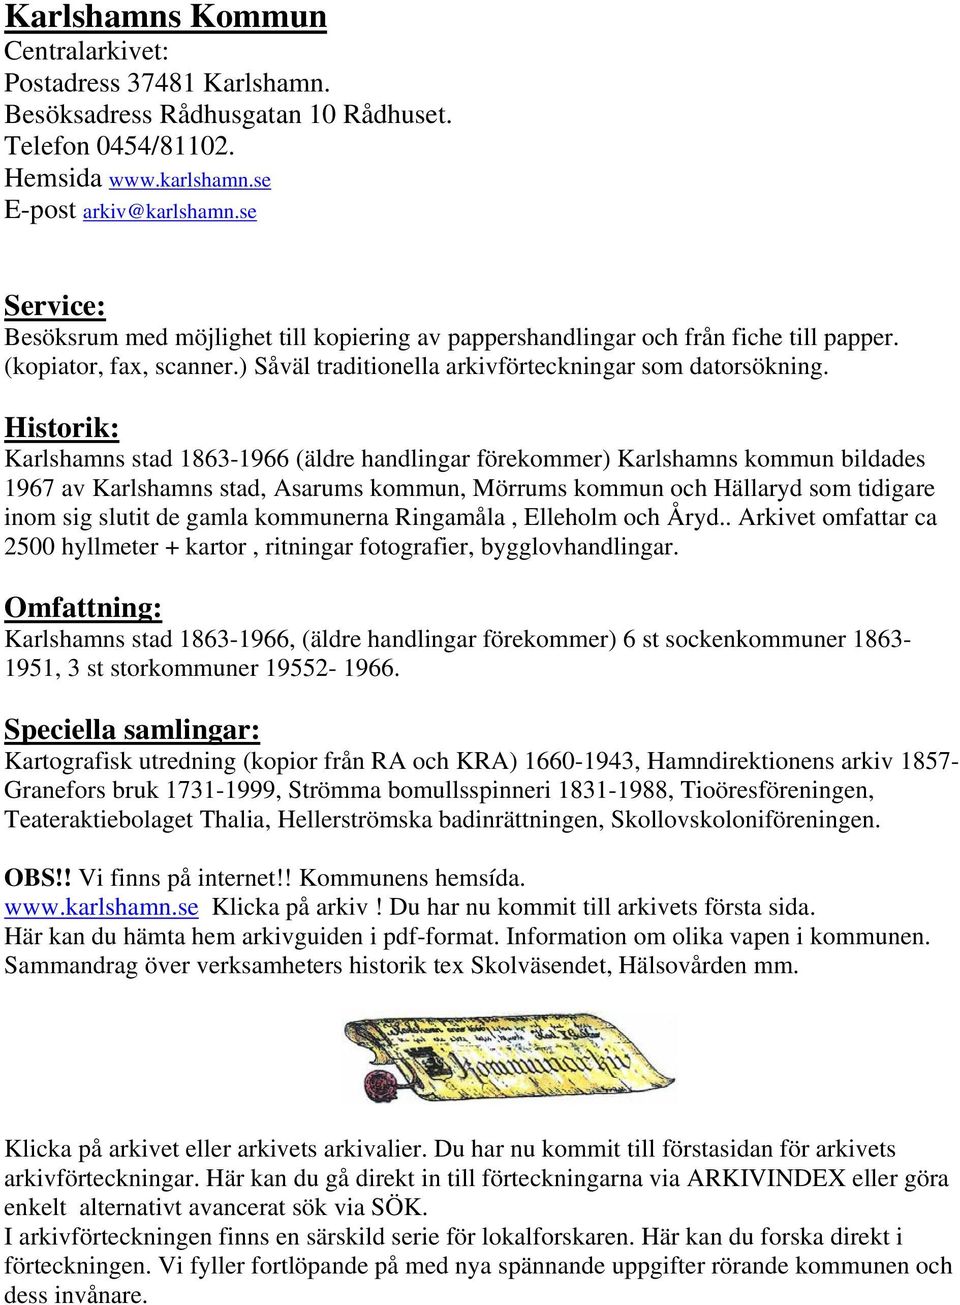 Historik: Karlshamns stad 1863-1966 (äldre handlingar förekommer) Karlshamns kommun bildades 1967 av Karlshamns stad, Asarums kommun, Mörrums kommun och Hällaryd som tidigare inom sig slutit de gamla